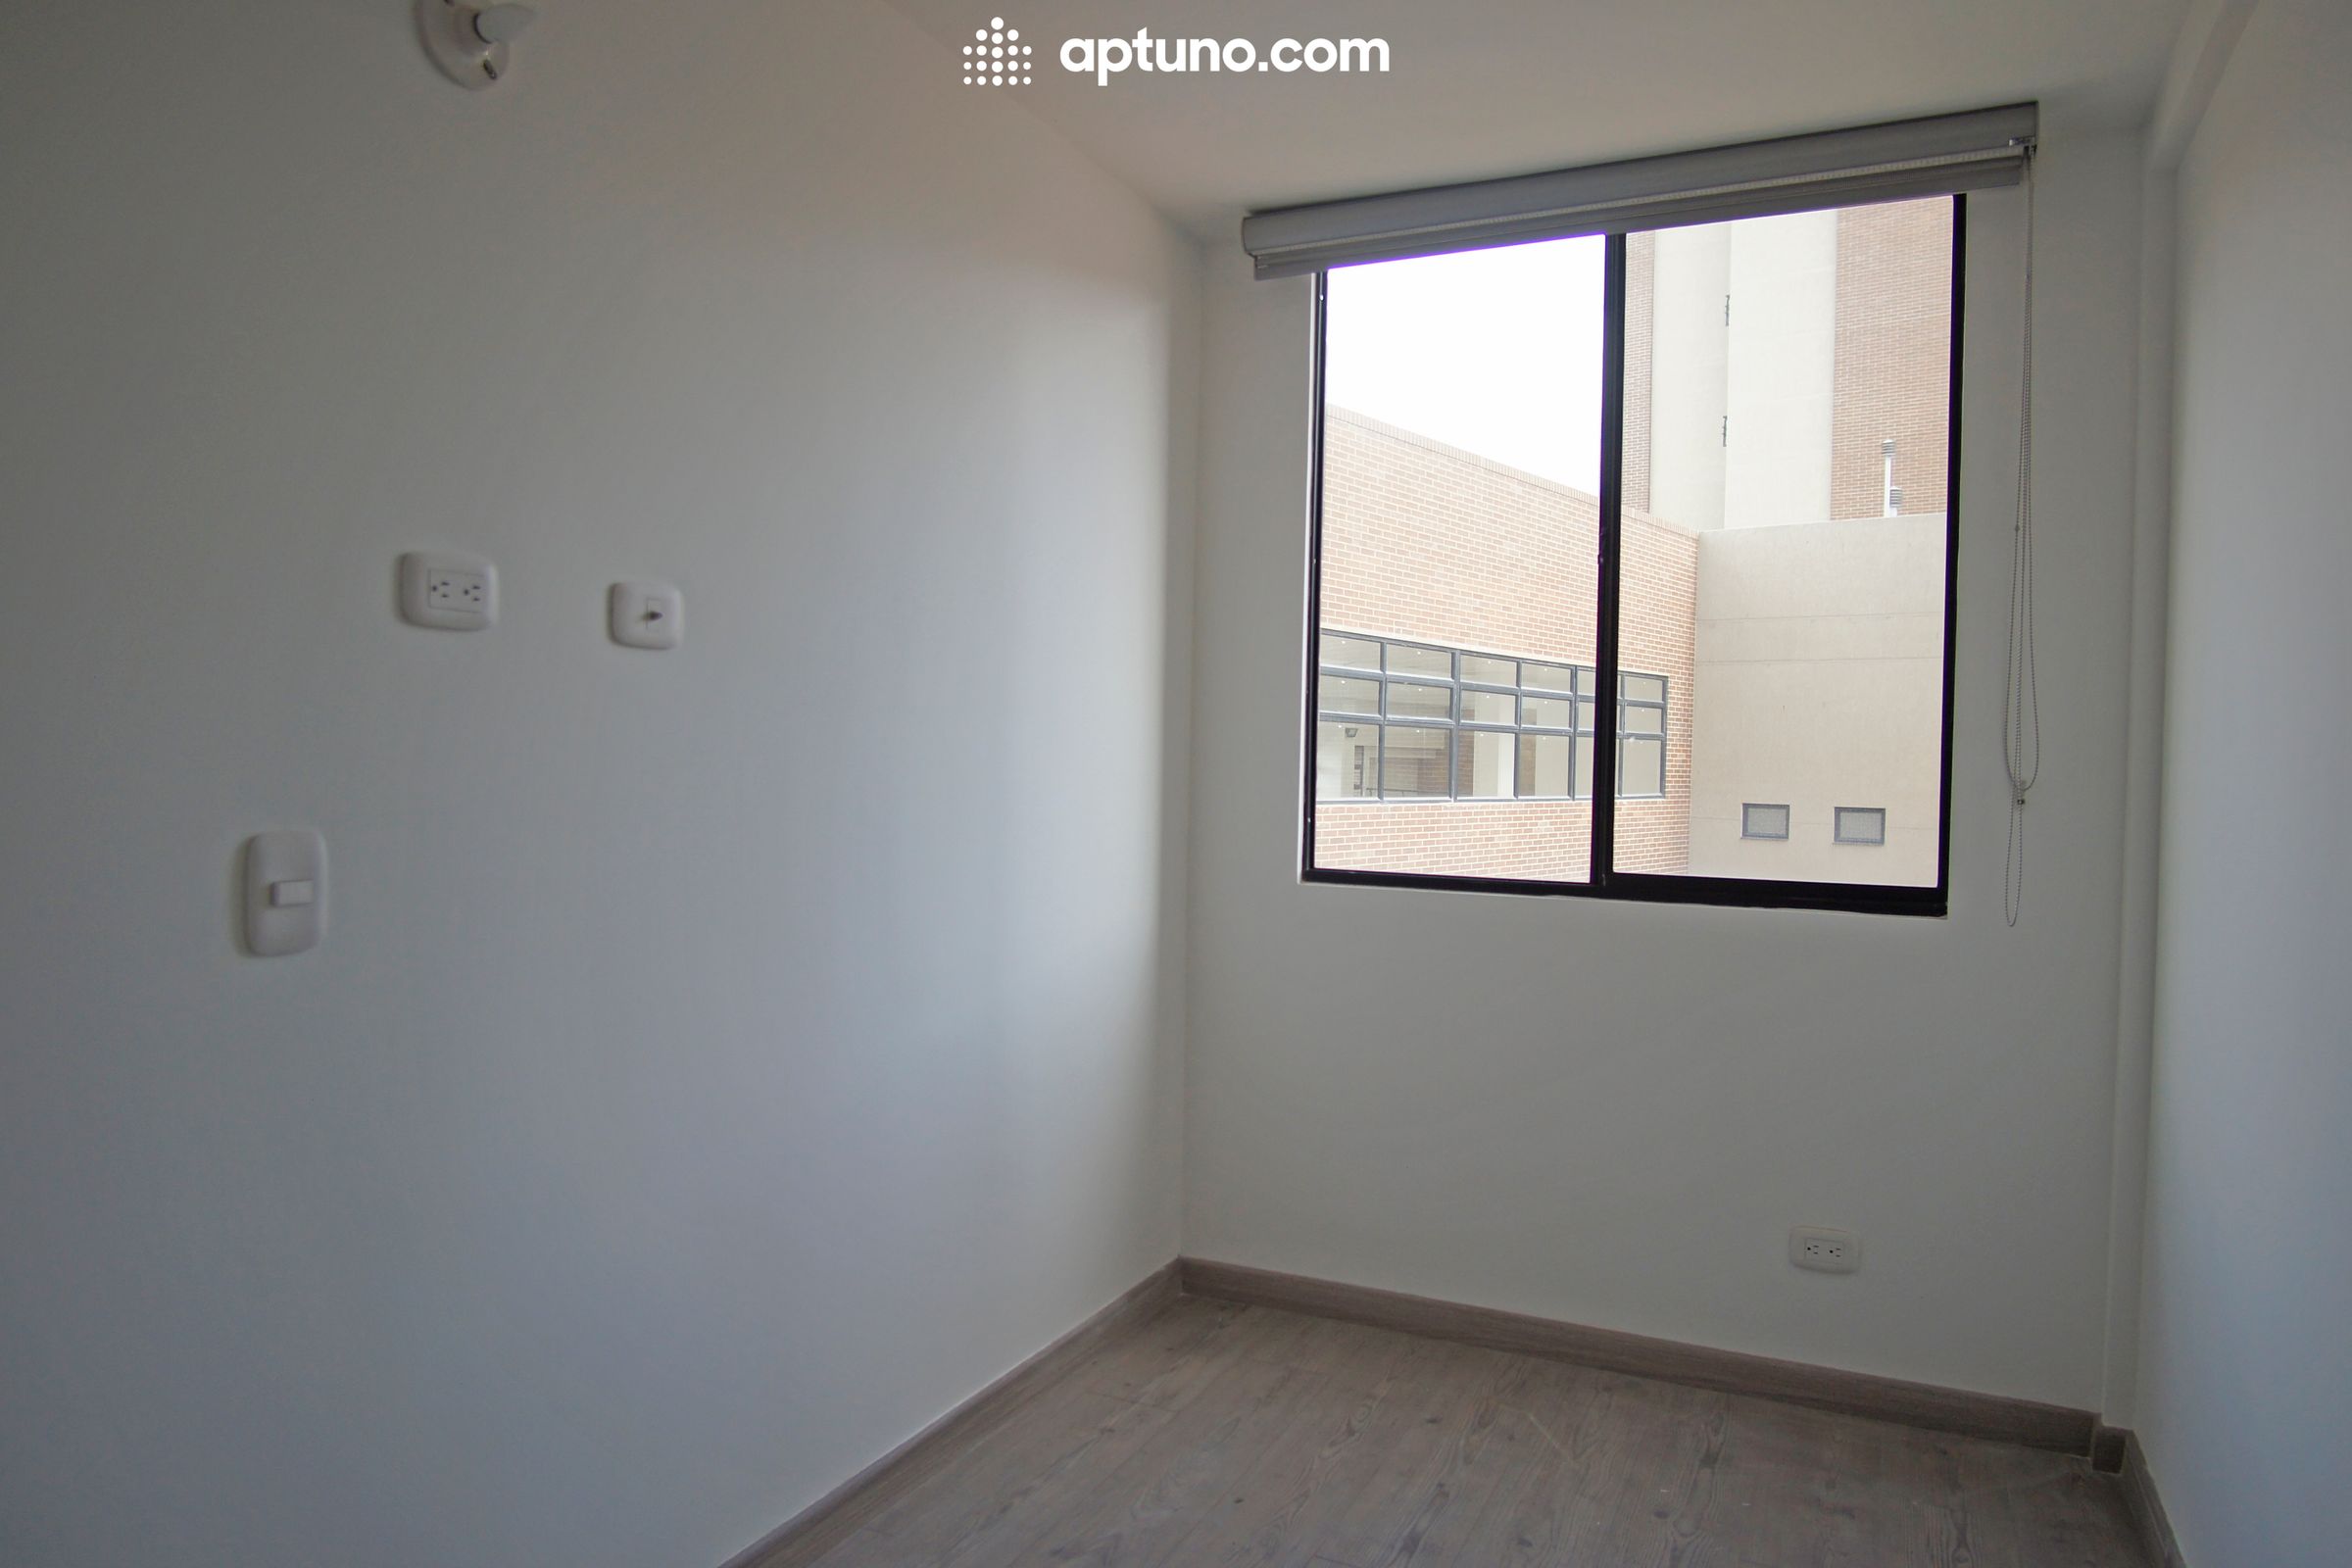 Apartamento en arriendo Zipaquirá 68 m² - $ 1.350.000,00